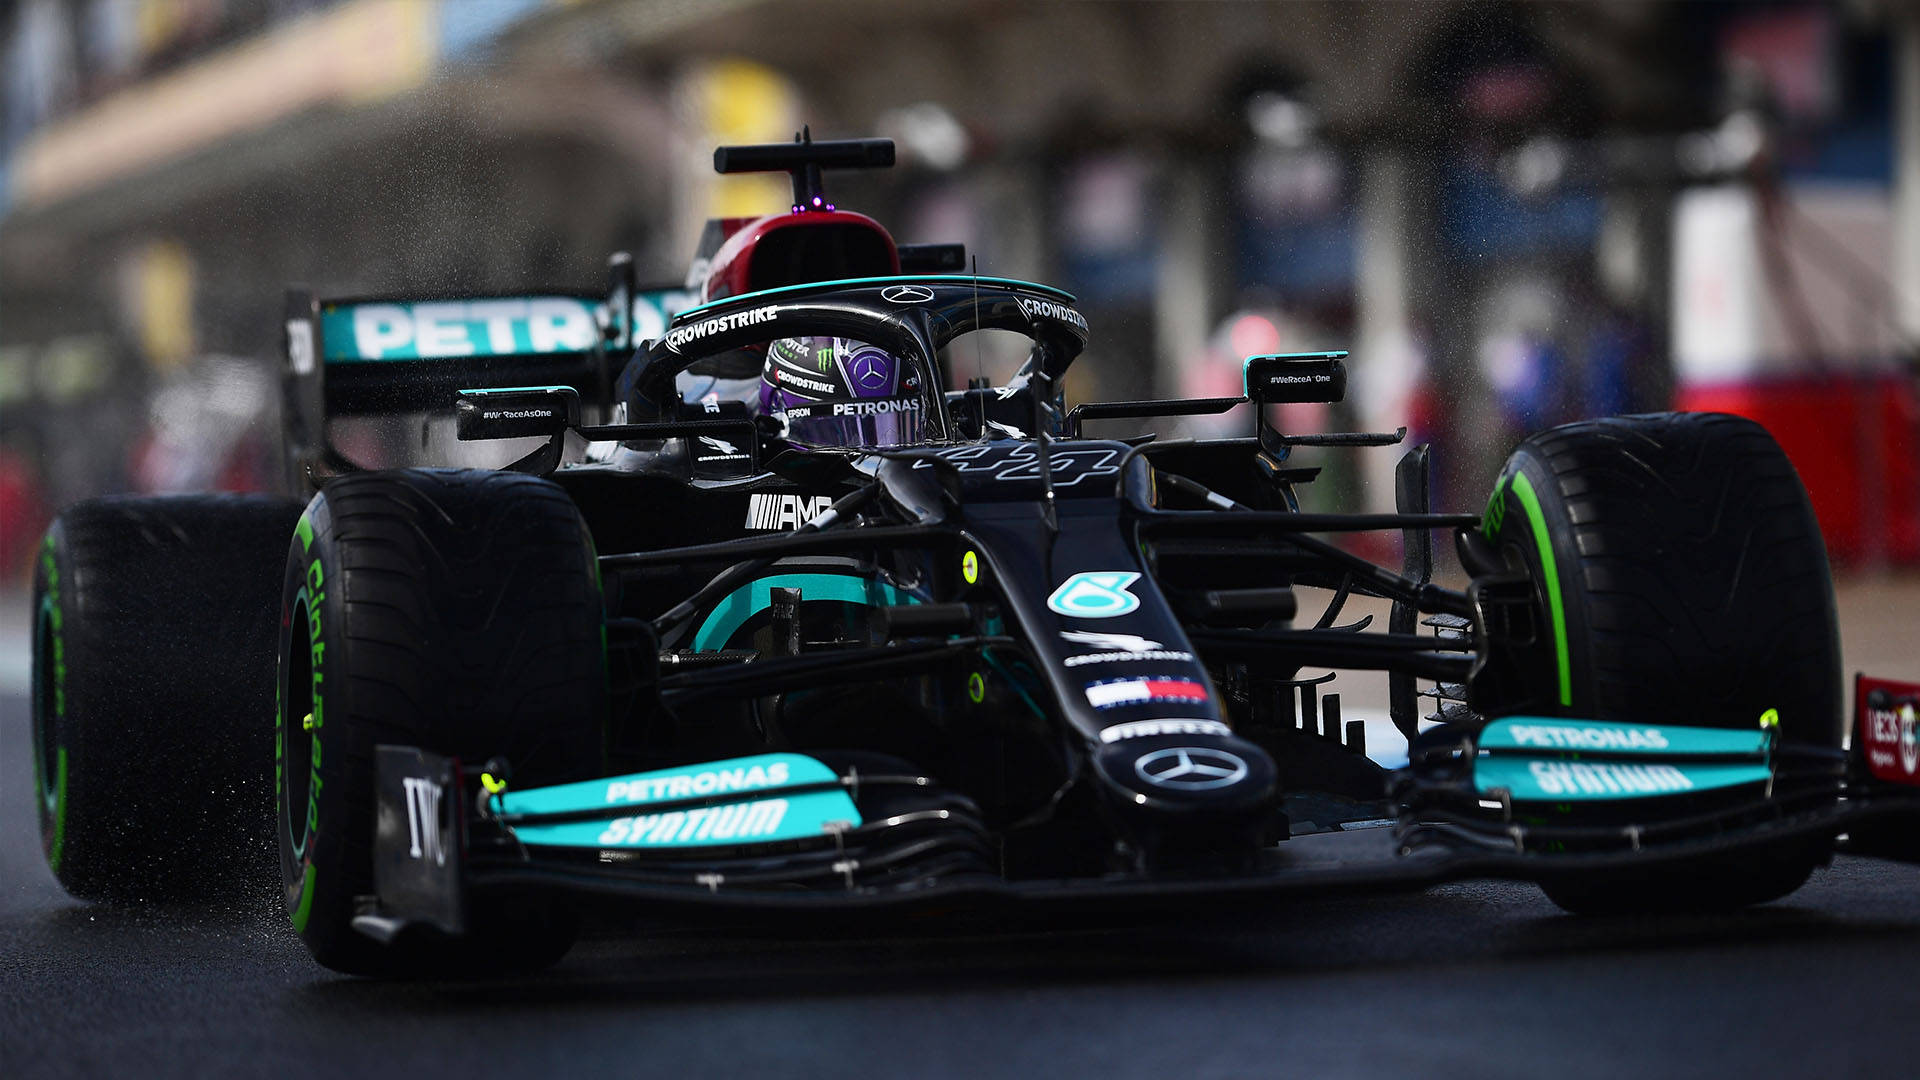 All Black Racing Car Of Lewis Hamilton F1 Wallpaper